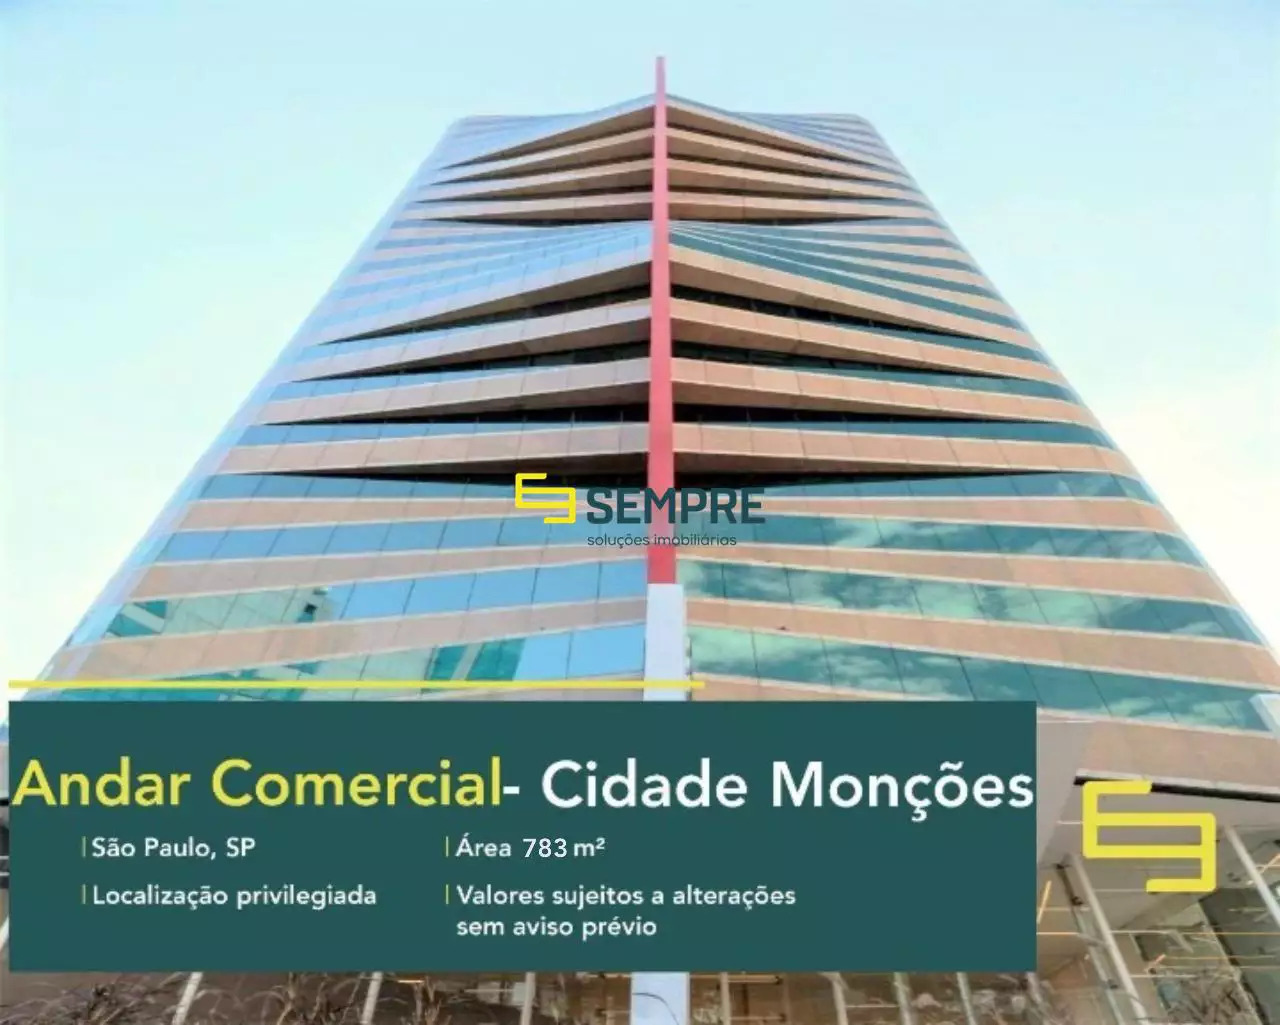 Laje corporativa para locação em Monções em São Paulo, excelente localização. O estabelecimento comercial conta com área de 767,22 m².